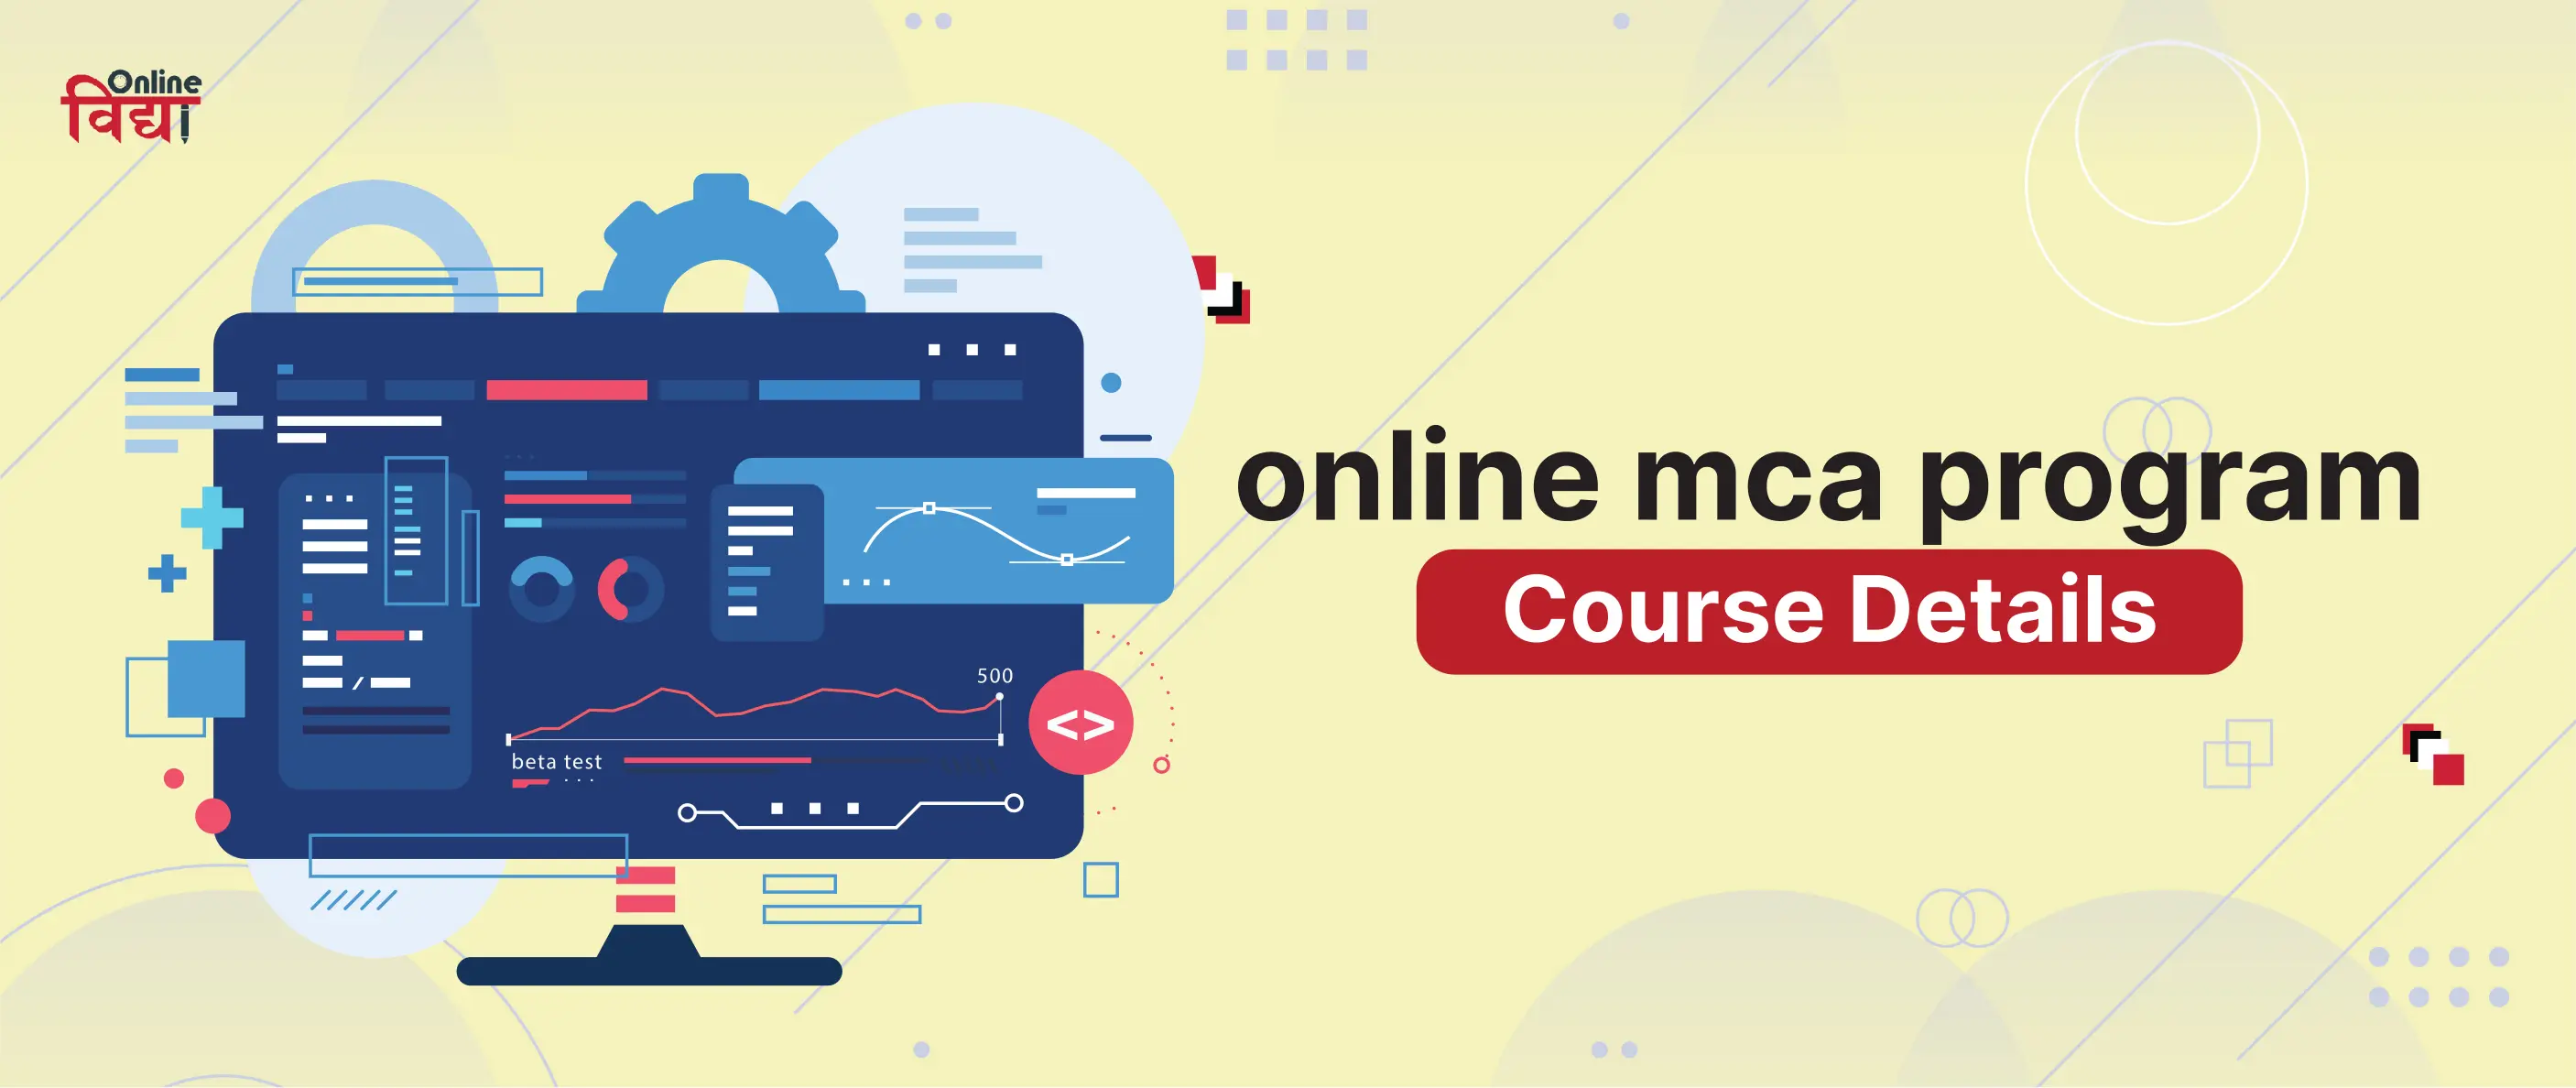 Online MCA Program - Course Details